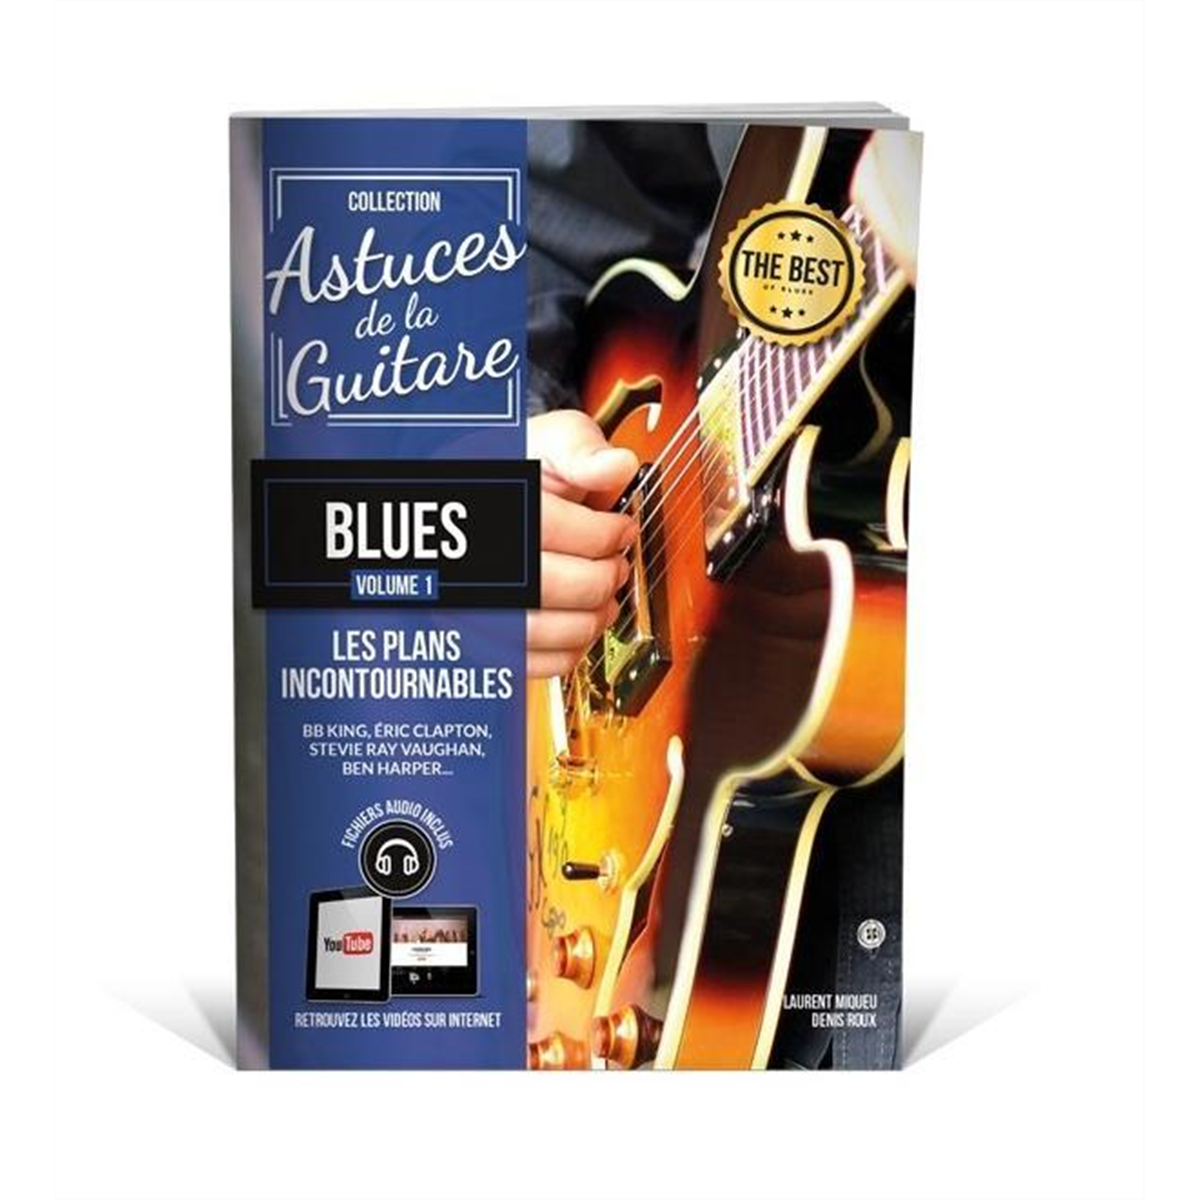 COUP DE POUCE Astuces de la guitare blues vol.1